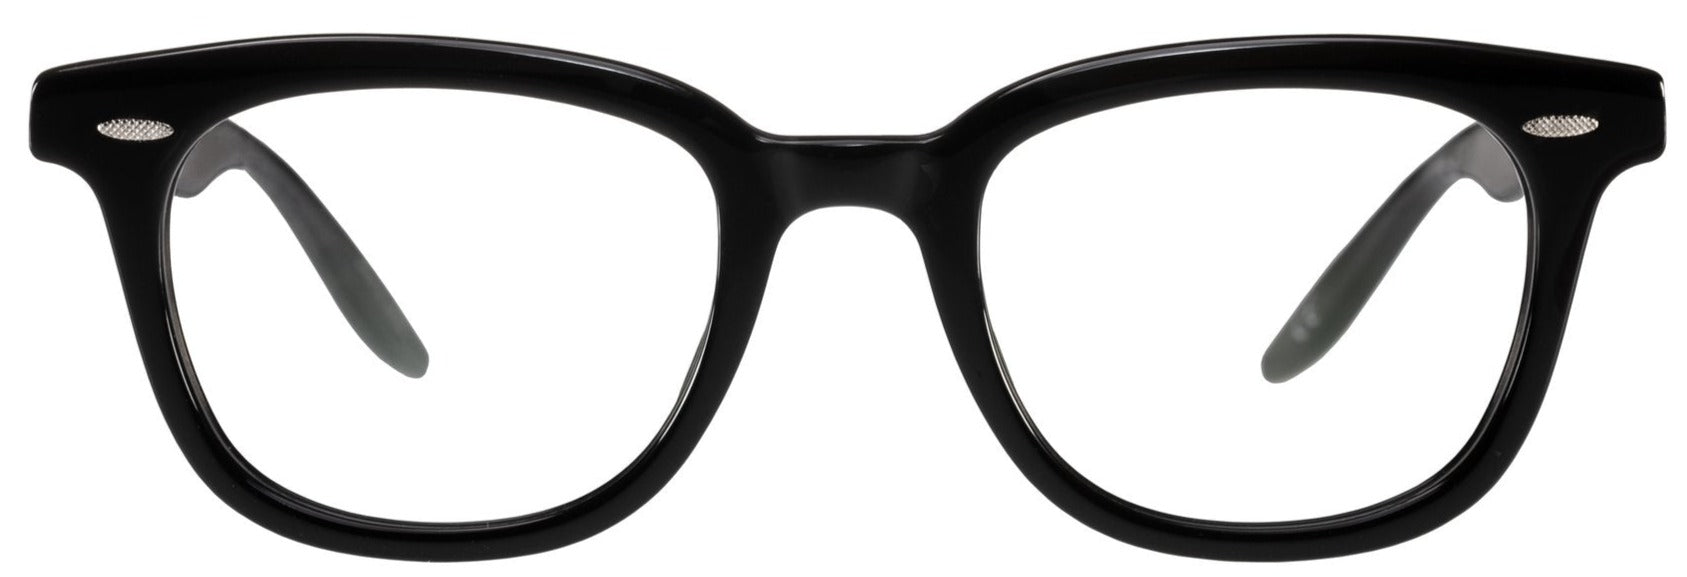 Alexander Daas - Barton Perreira Cecil Eyeglasses - Black - Front View